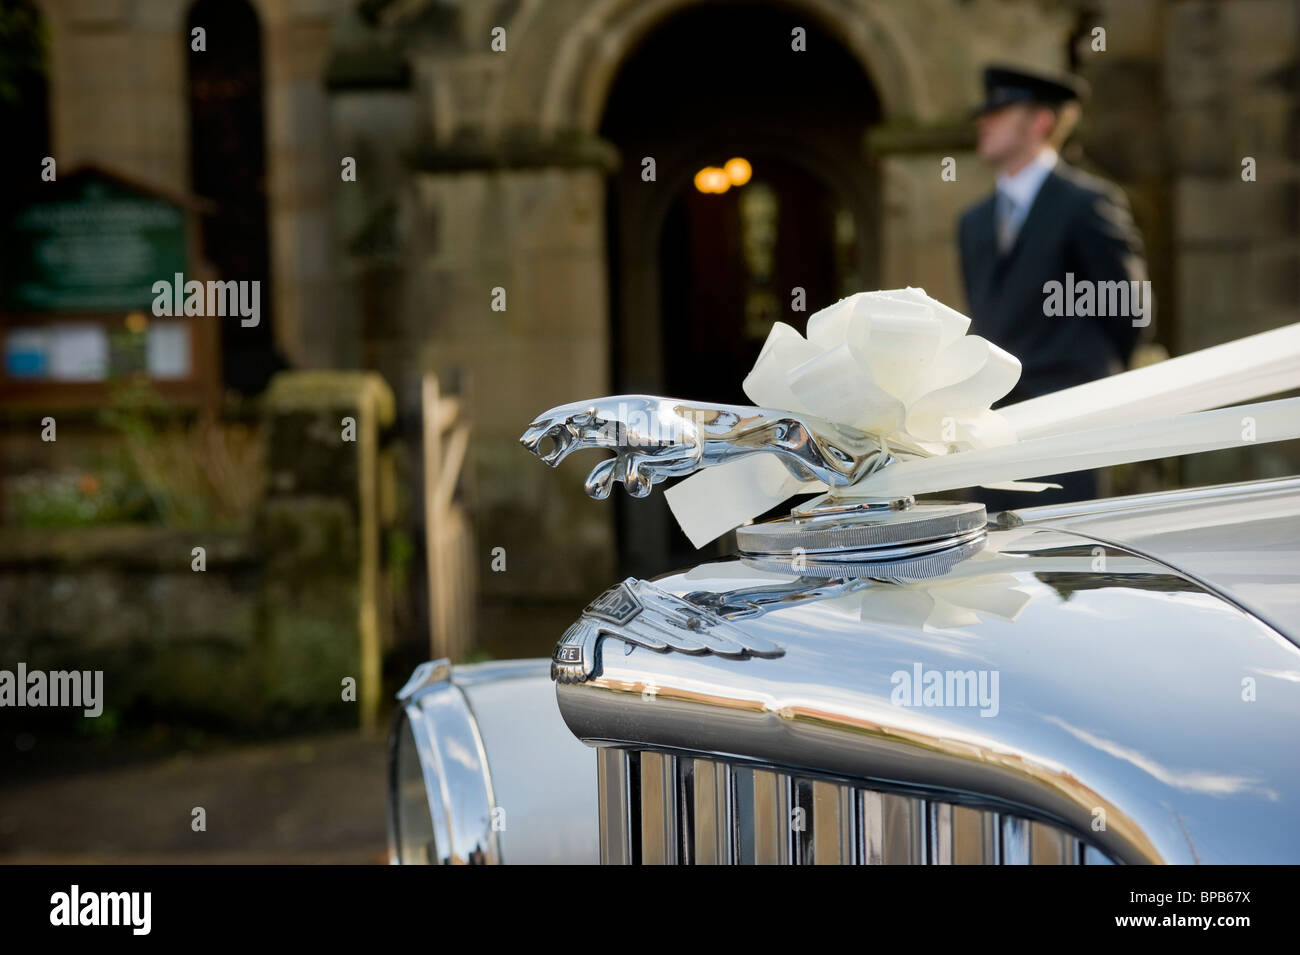 Primo piano di un'auto Jaguar decorata con nastri bianchi per un matrimonio, con autista fuori fuoco in piedi fuori da una chiesa, in lontananza. Foto Stock